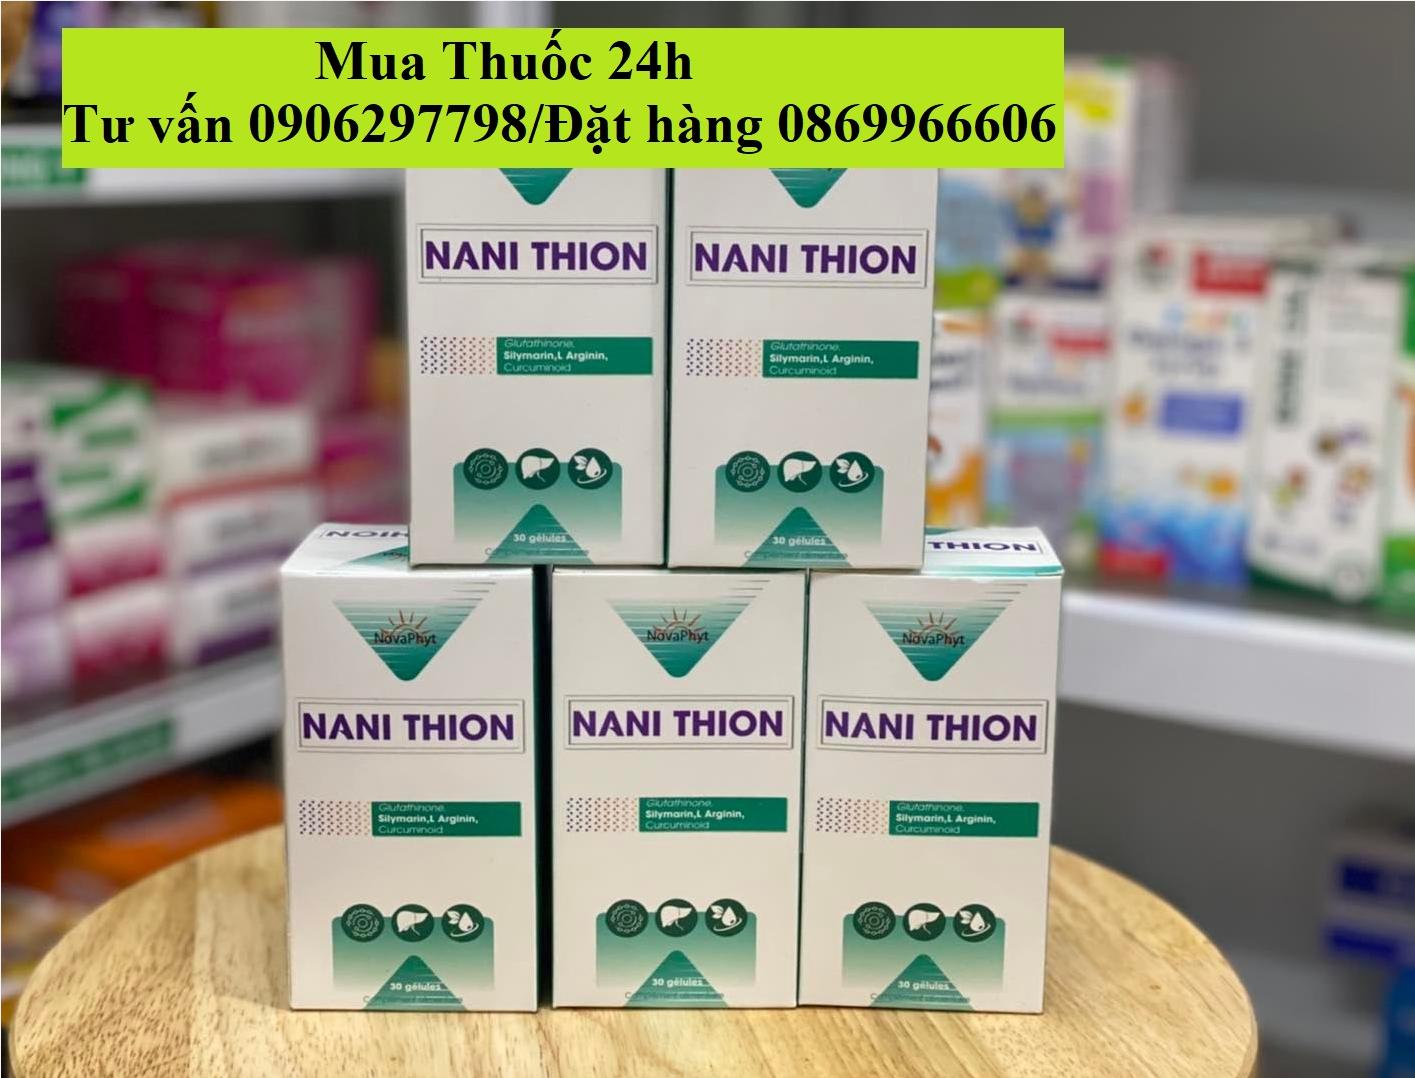 Thuốc Nani Thion giá bao nhiêu mua ở đâu?